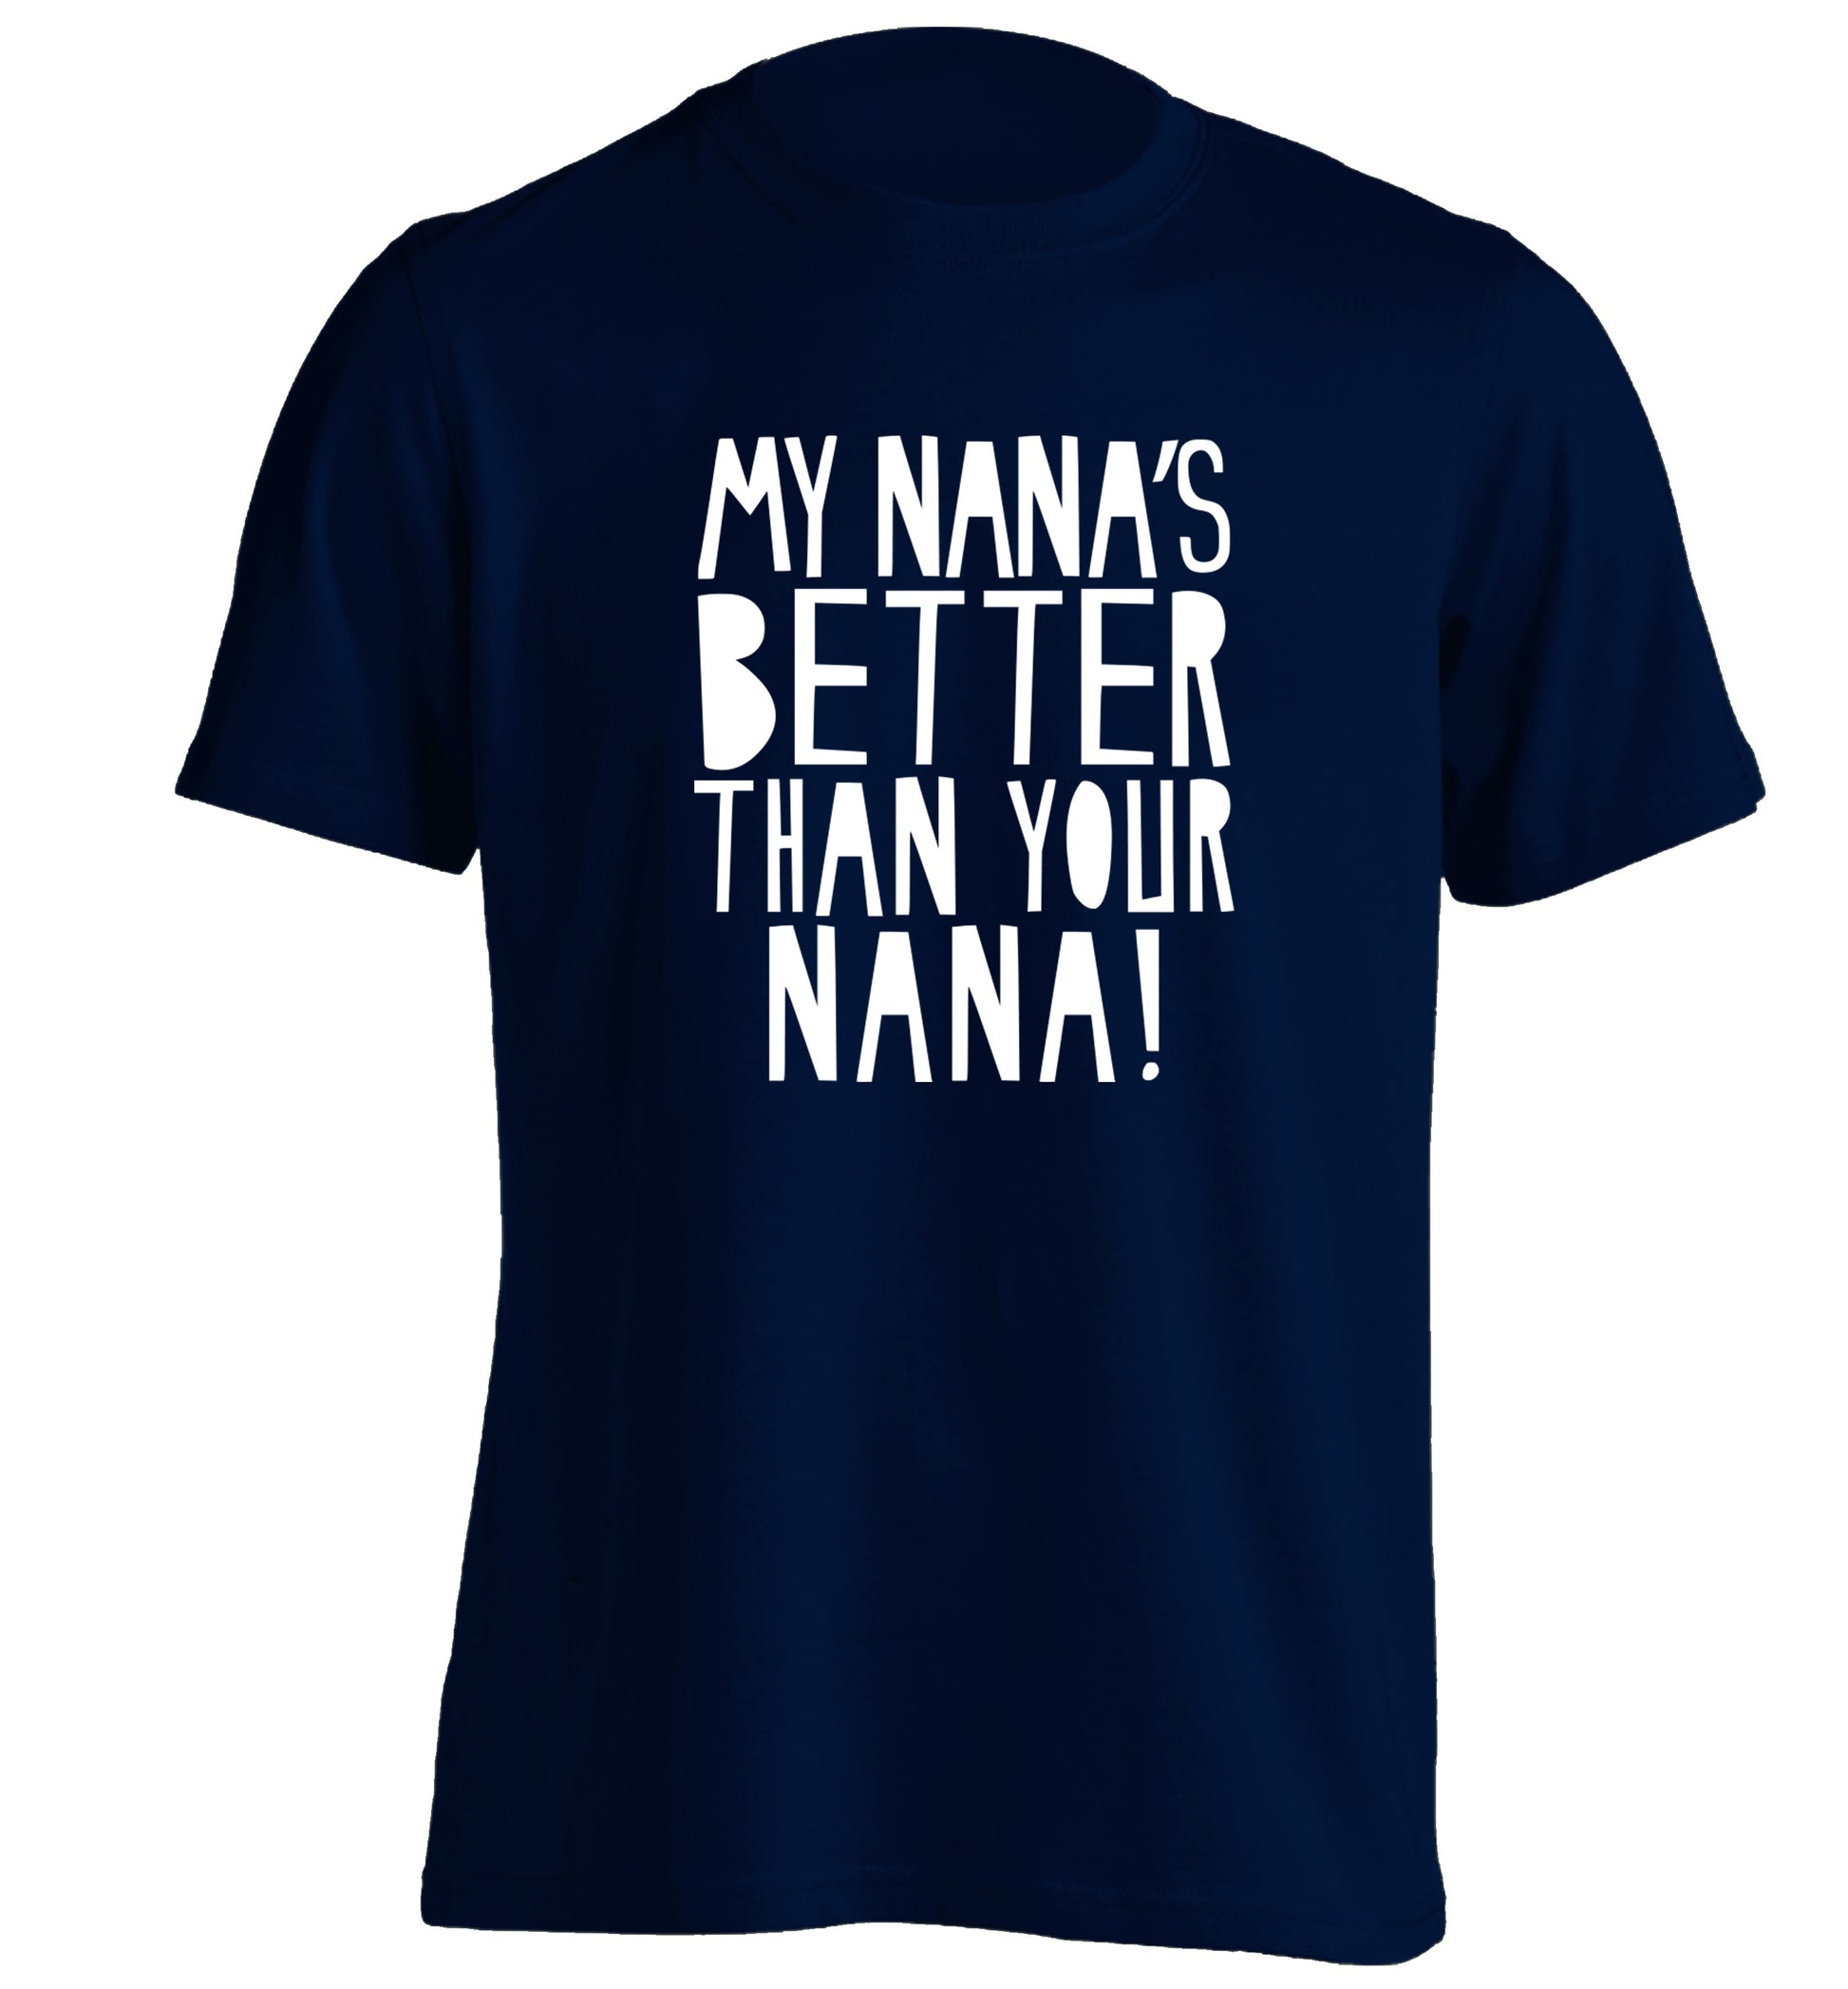 My nana's better than your nana adults unisex navy Tshirt 2XL